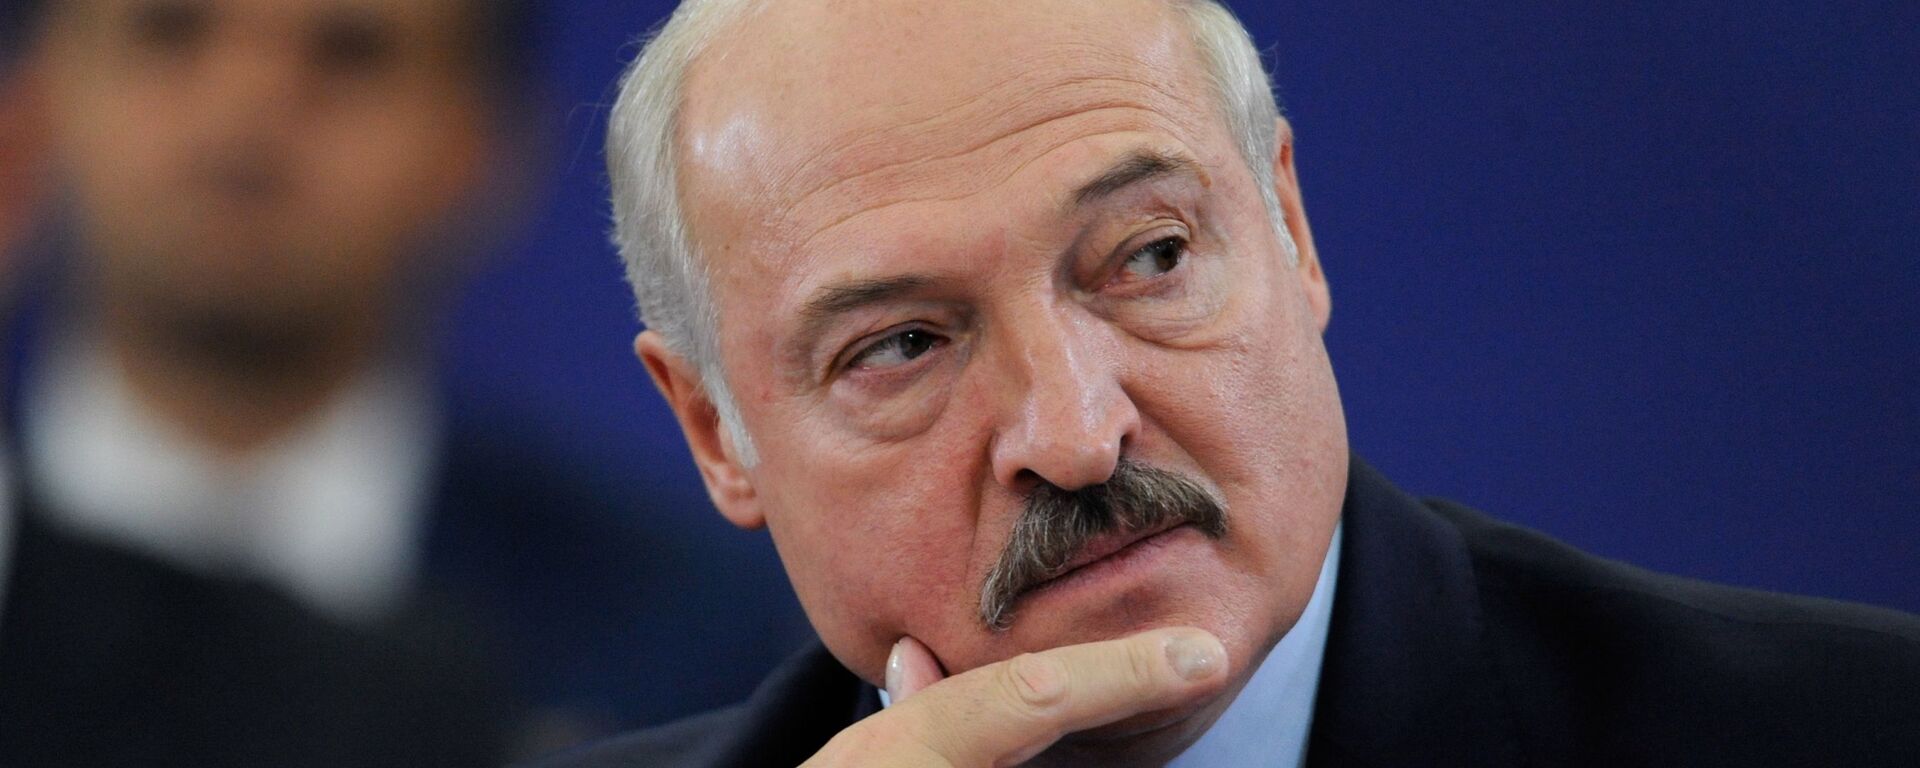 Alexandr Lukashenko, el presidente de Bielorrusia - Sputnik Mundo, 1920, 15.03.2022